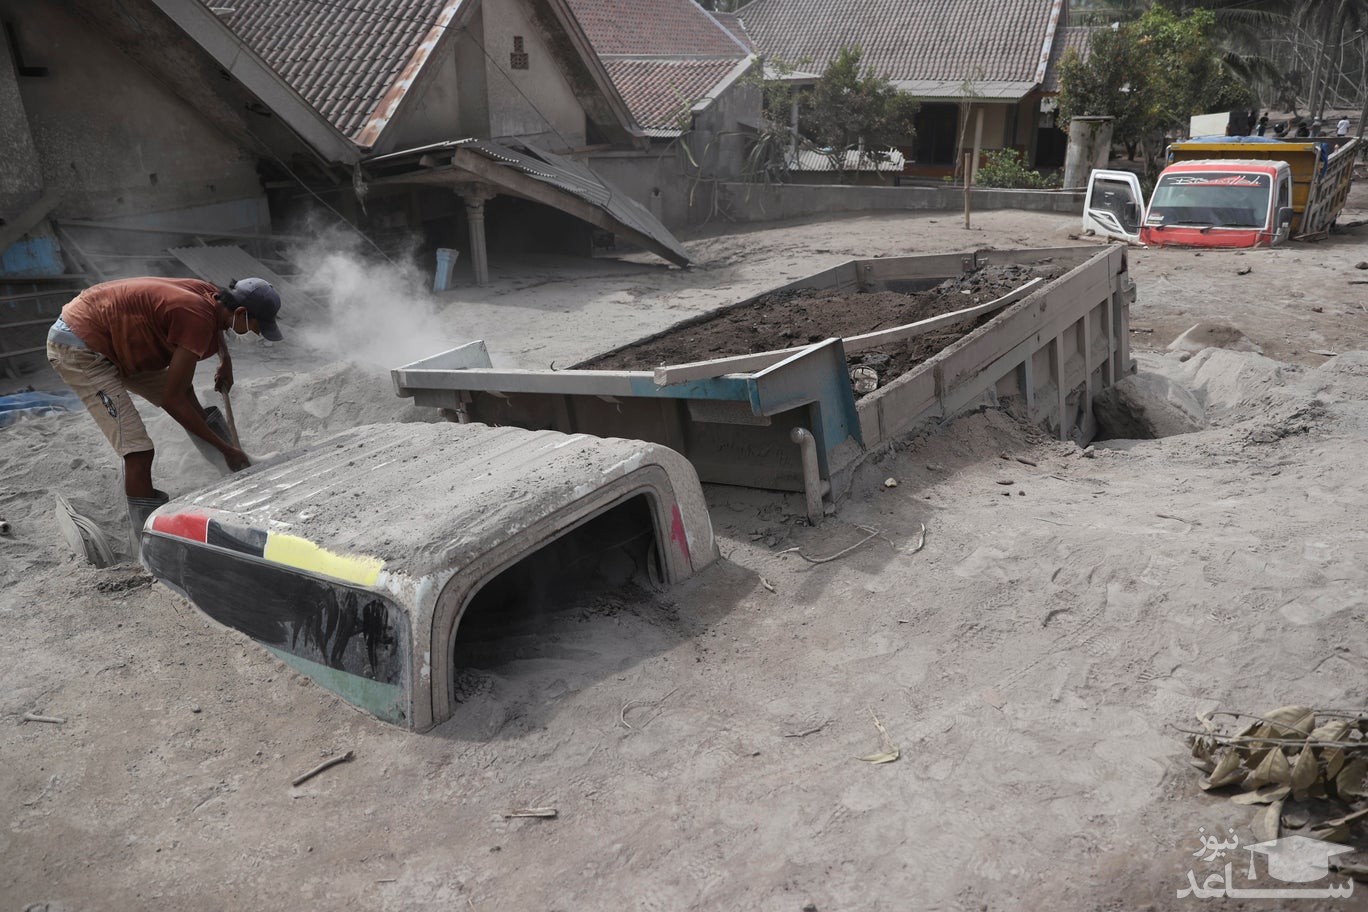 مدفون شدن کامیون ها زیر غبارهای آتشفشانی در جاوه اندونزی/ آسوشیتدپرس